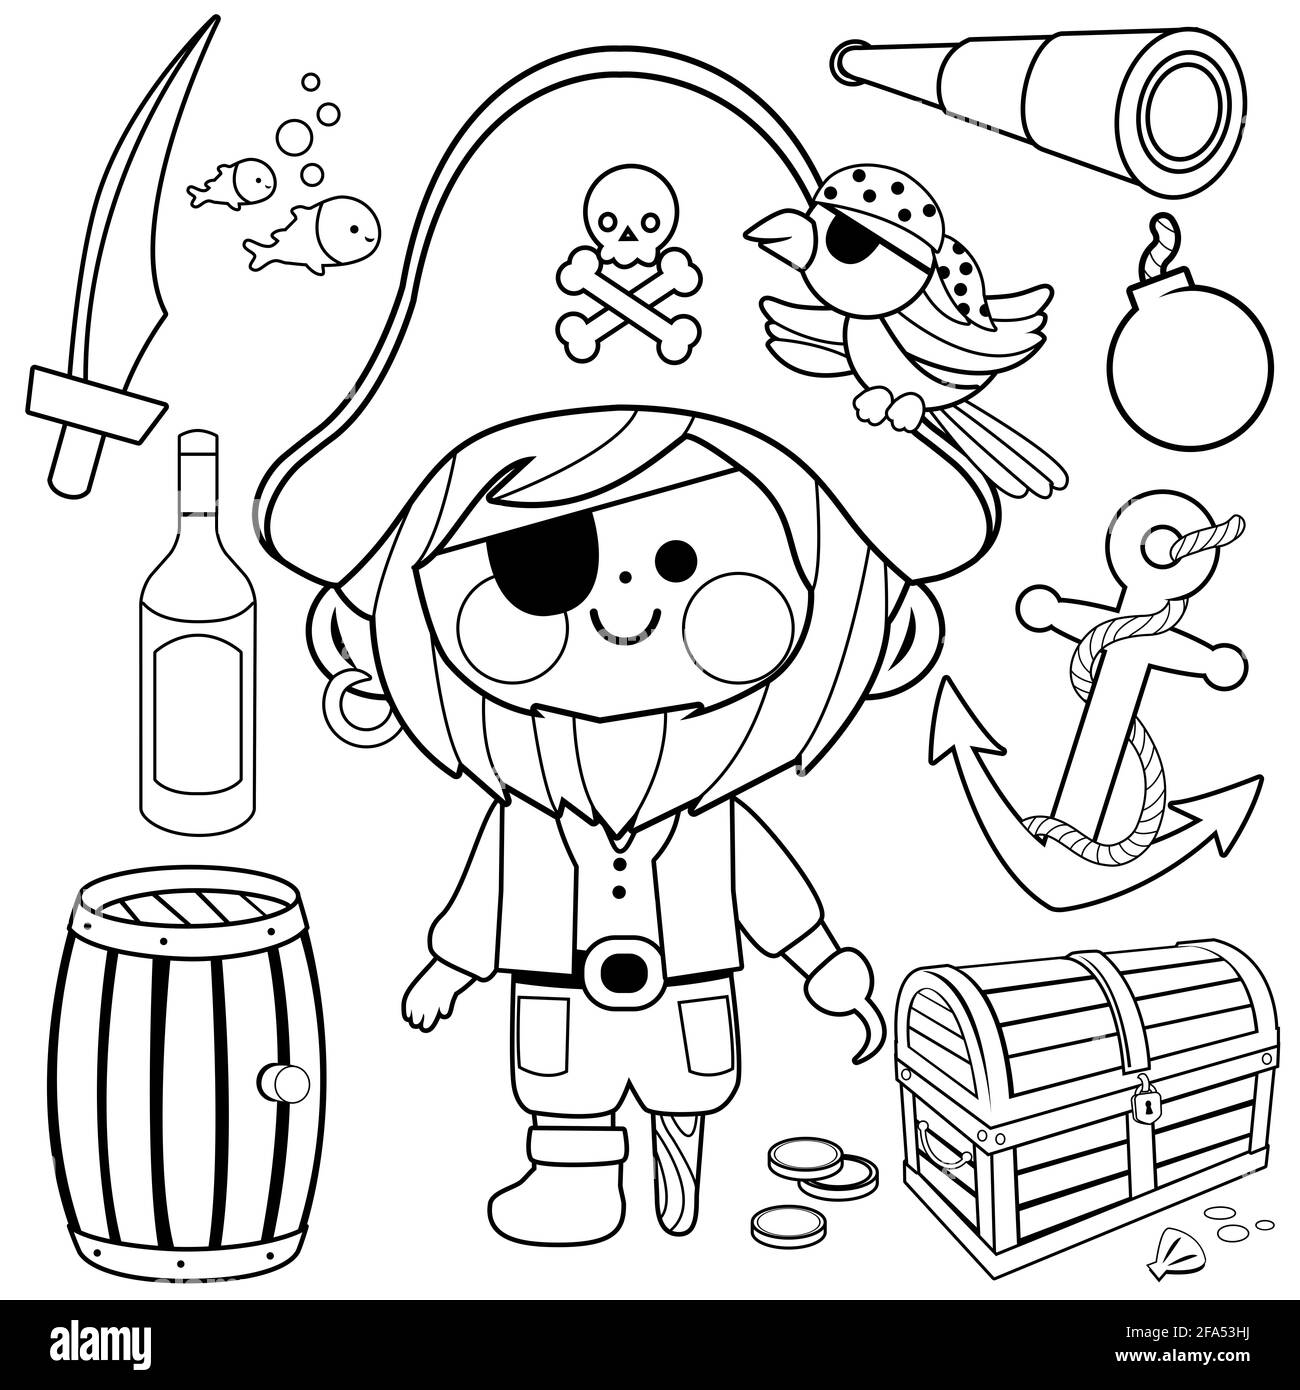 Capitaine pirate avec un crochet et une jambe en bois et d'autres illustrations sur le thème des pirates. Page de livre de coloriage noir et blanc Banque D'Images